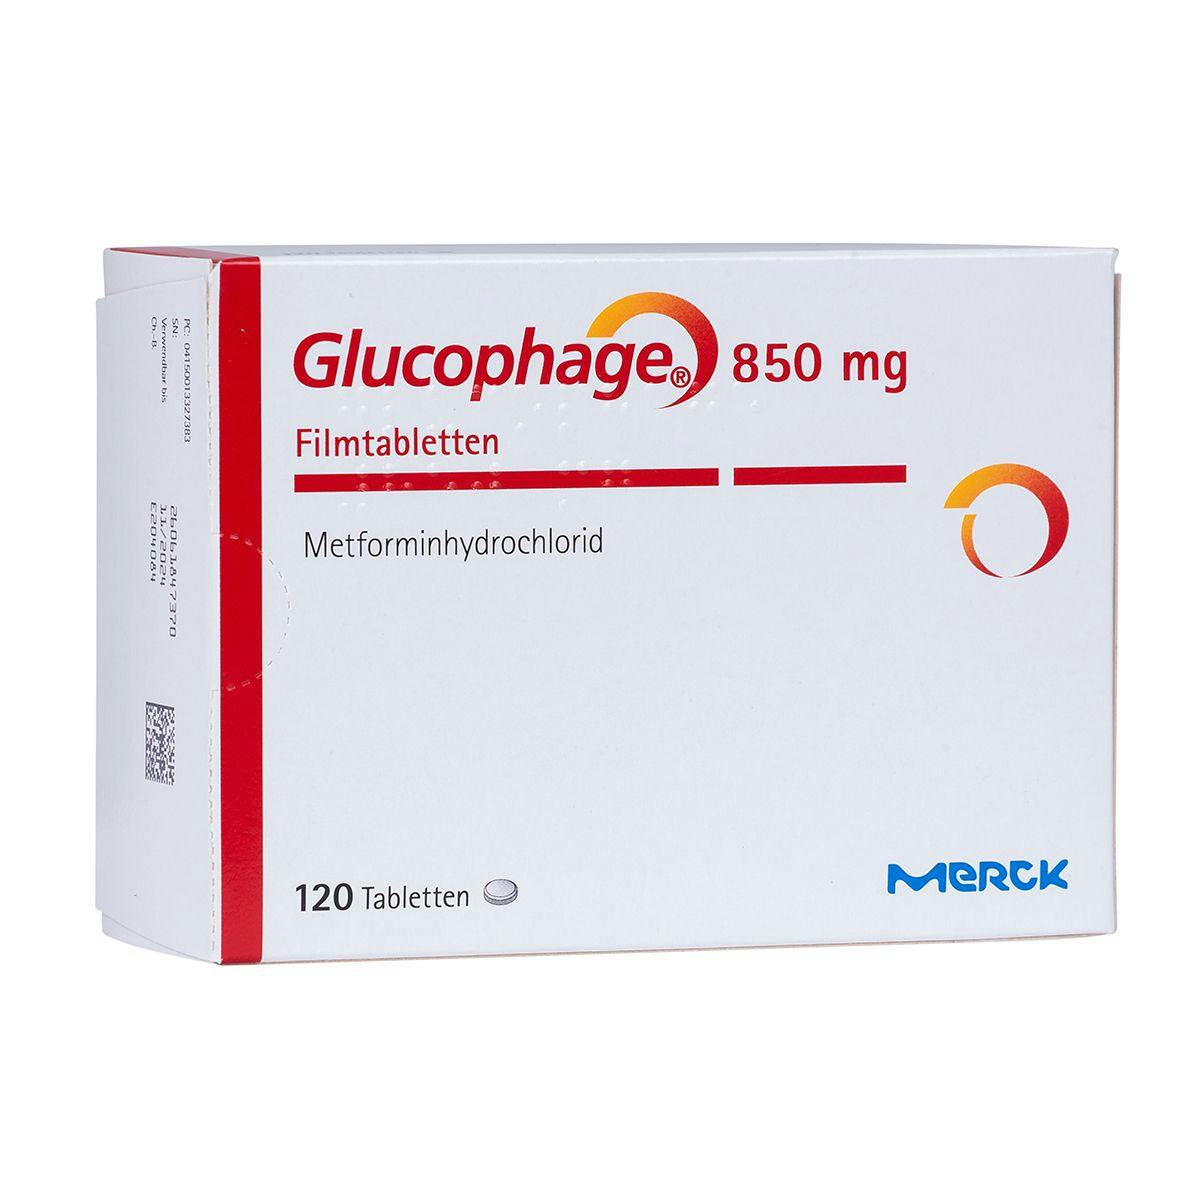 Glucophage (Metforminhydrochlorid)